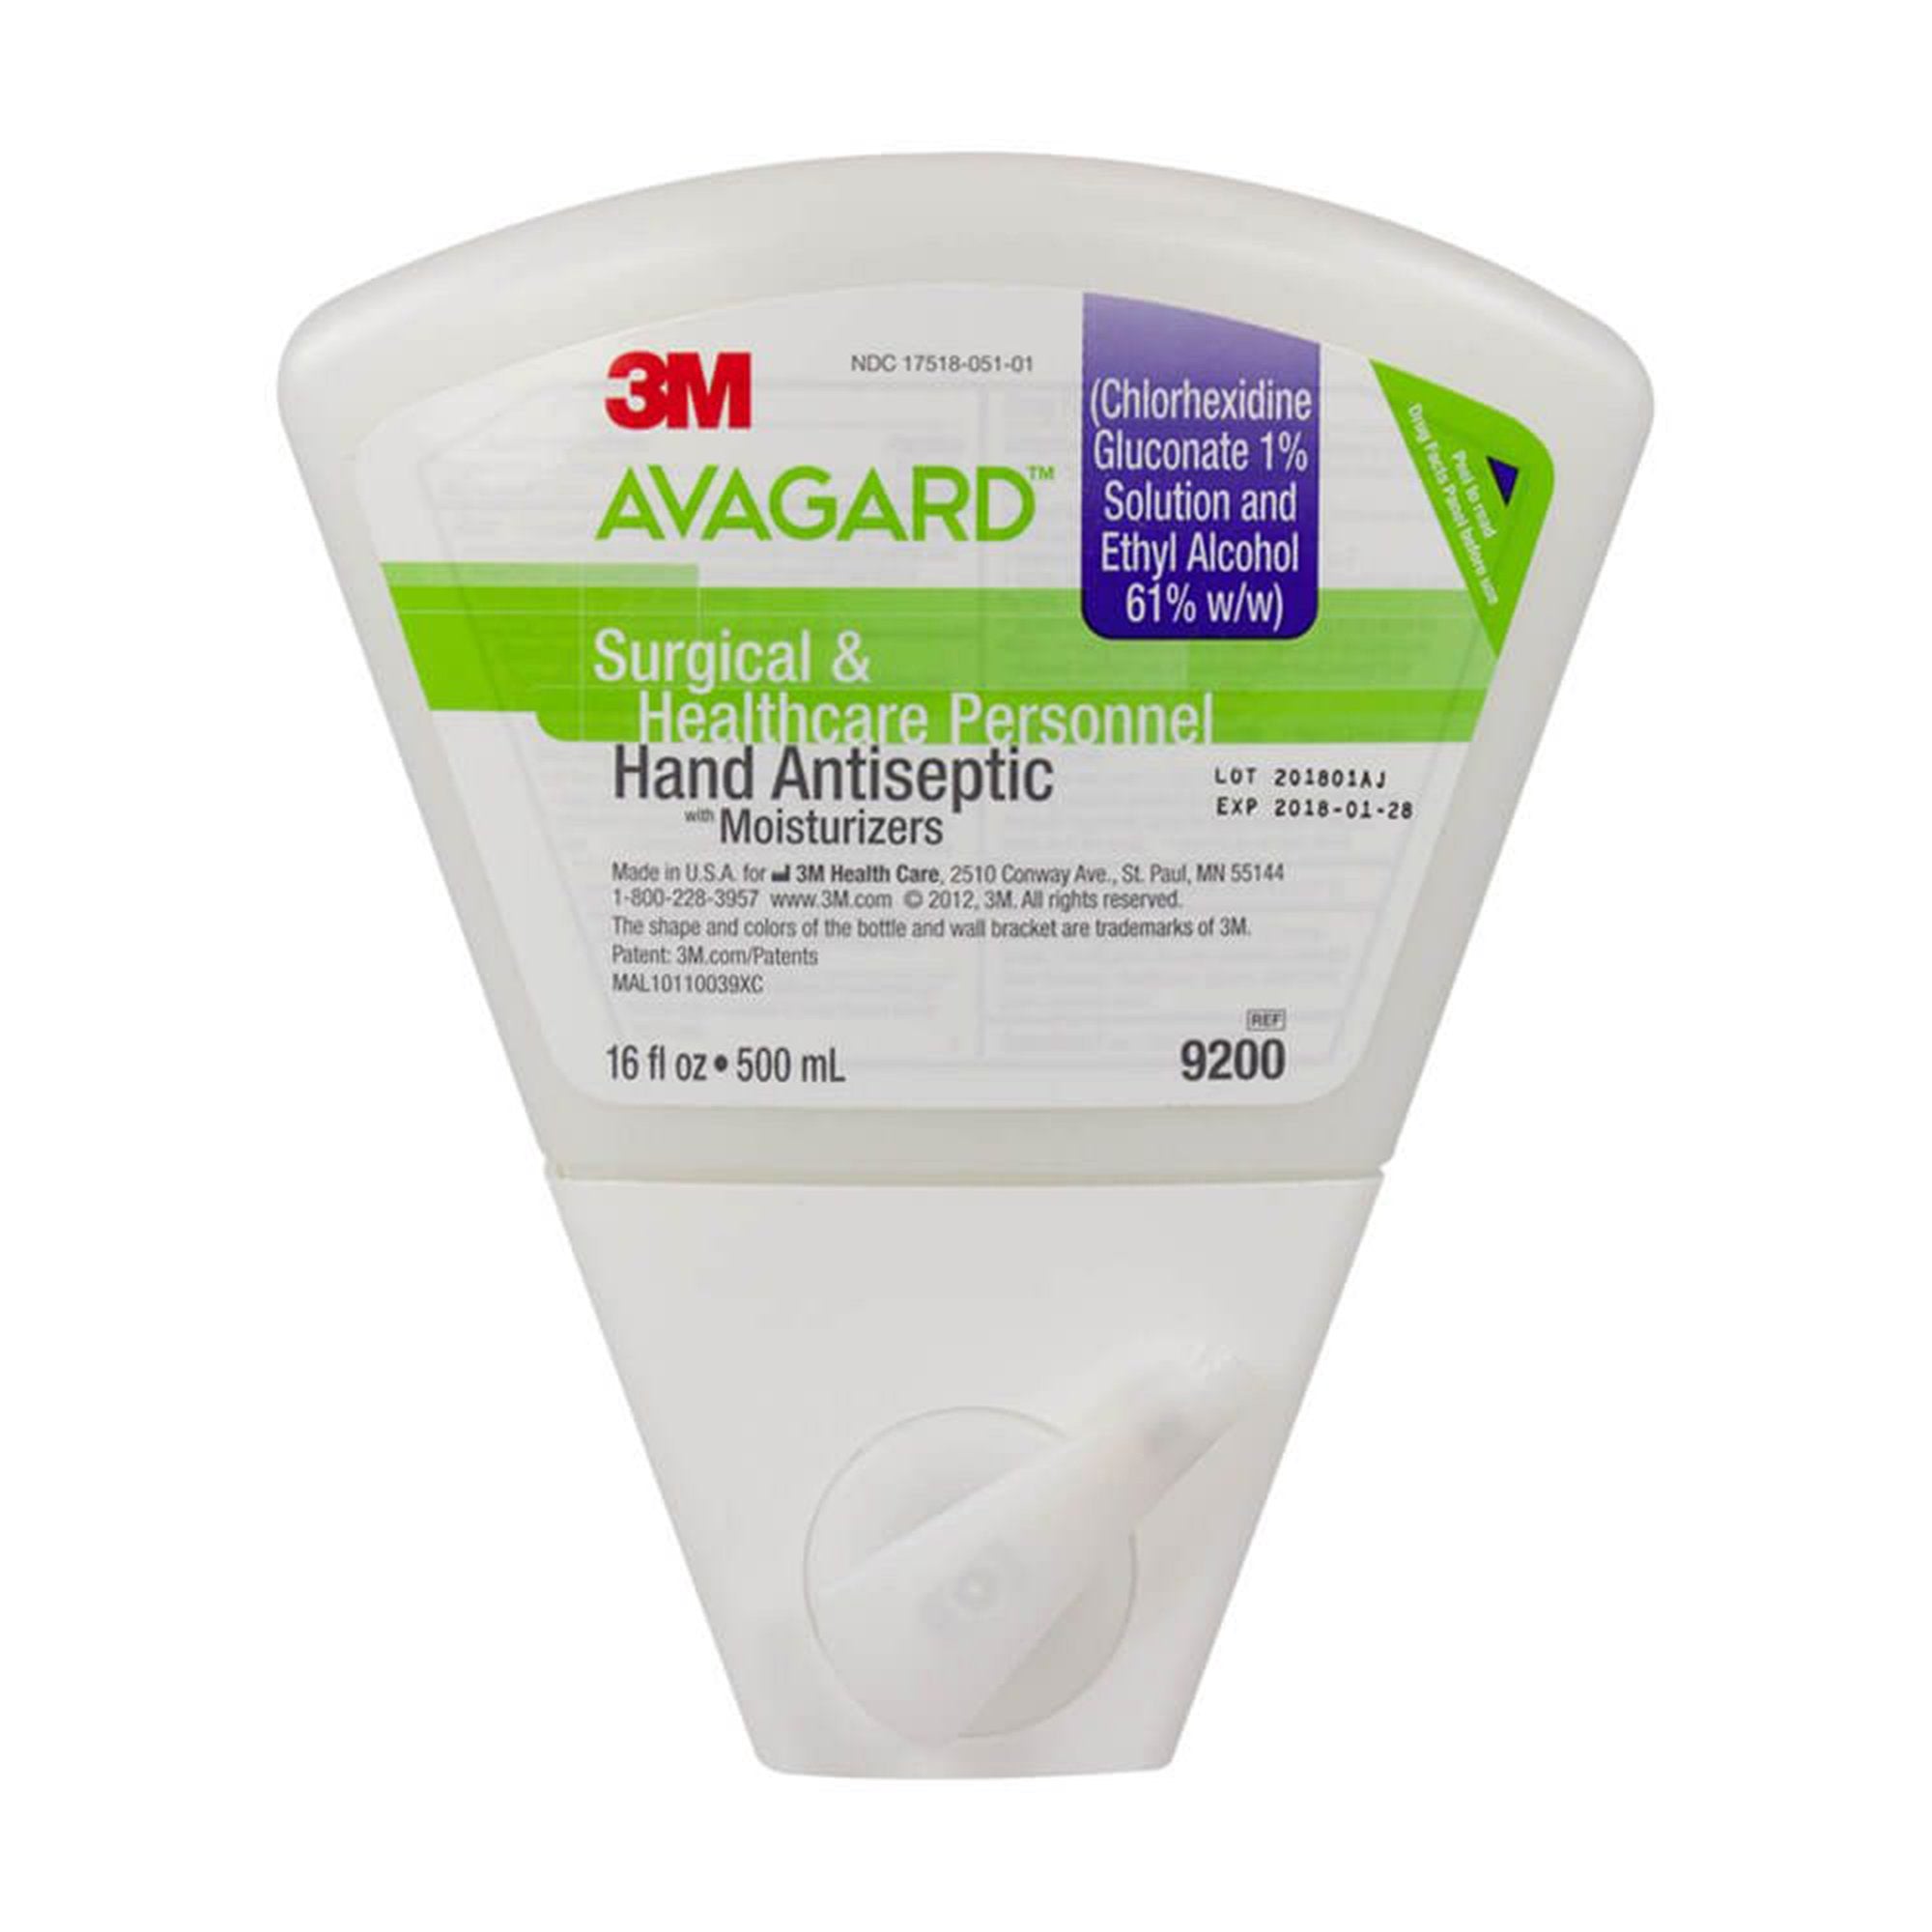 Waterless Surgical Scrub 3M Avagard 16 oz. Dispenser Refill Bottle 1% / 61% Strength CHG (Chlorhexidine Gluconate) / Ethyl Alcohol NonSterile